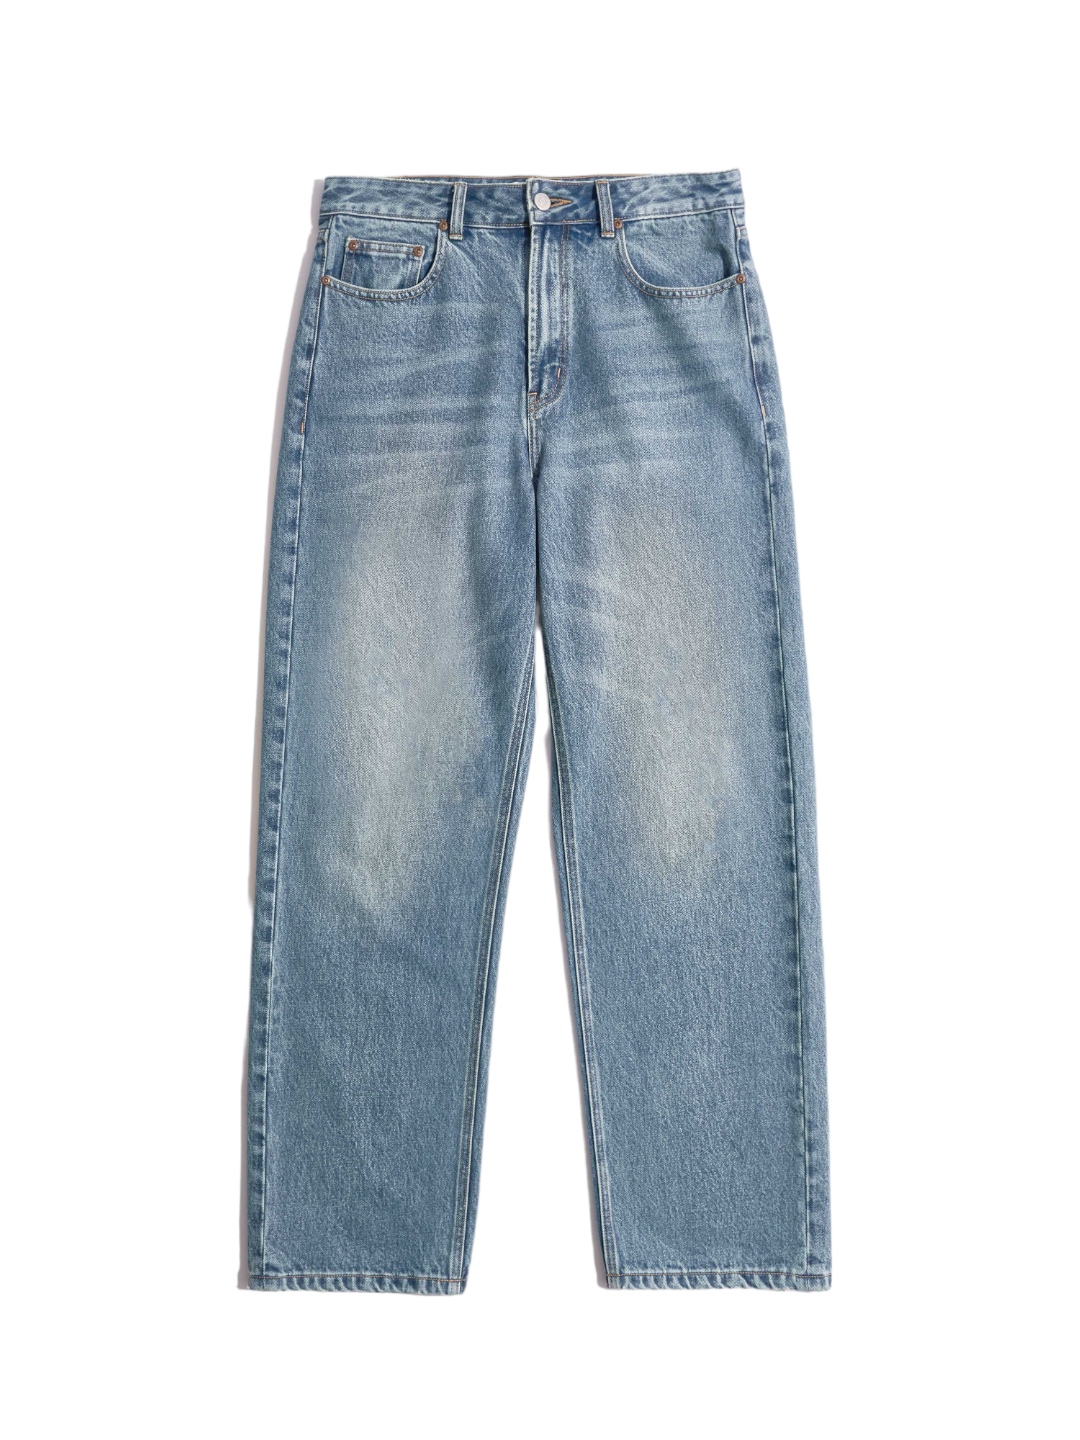 Standard Jeans (Vintage Blue)